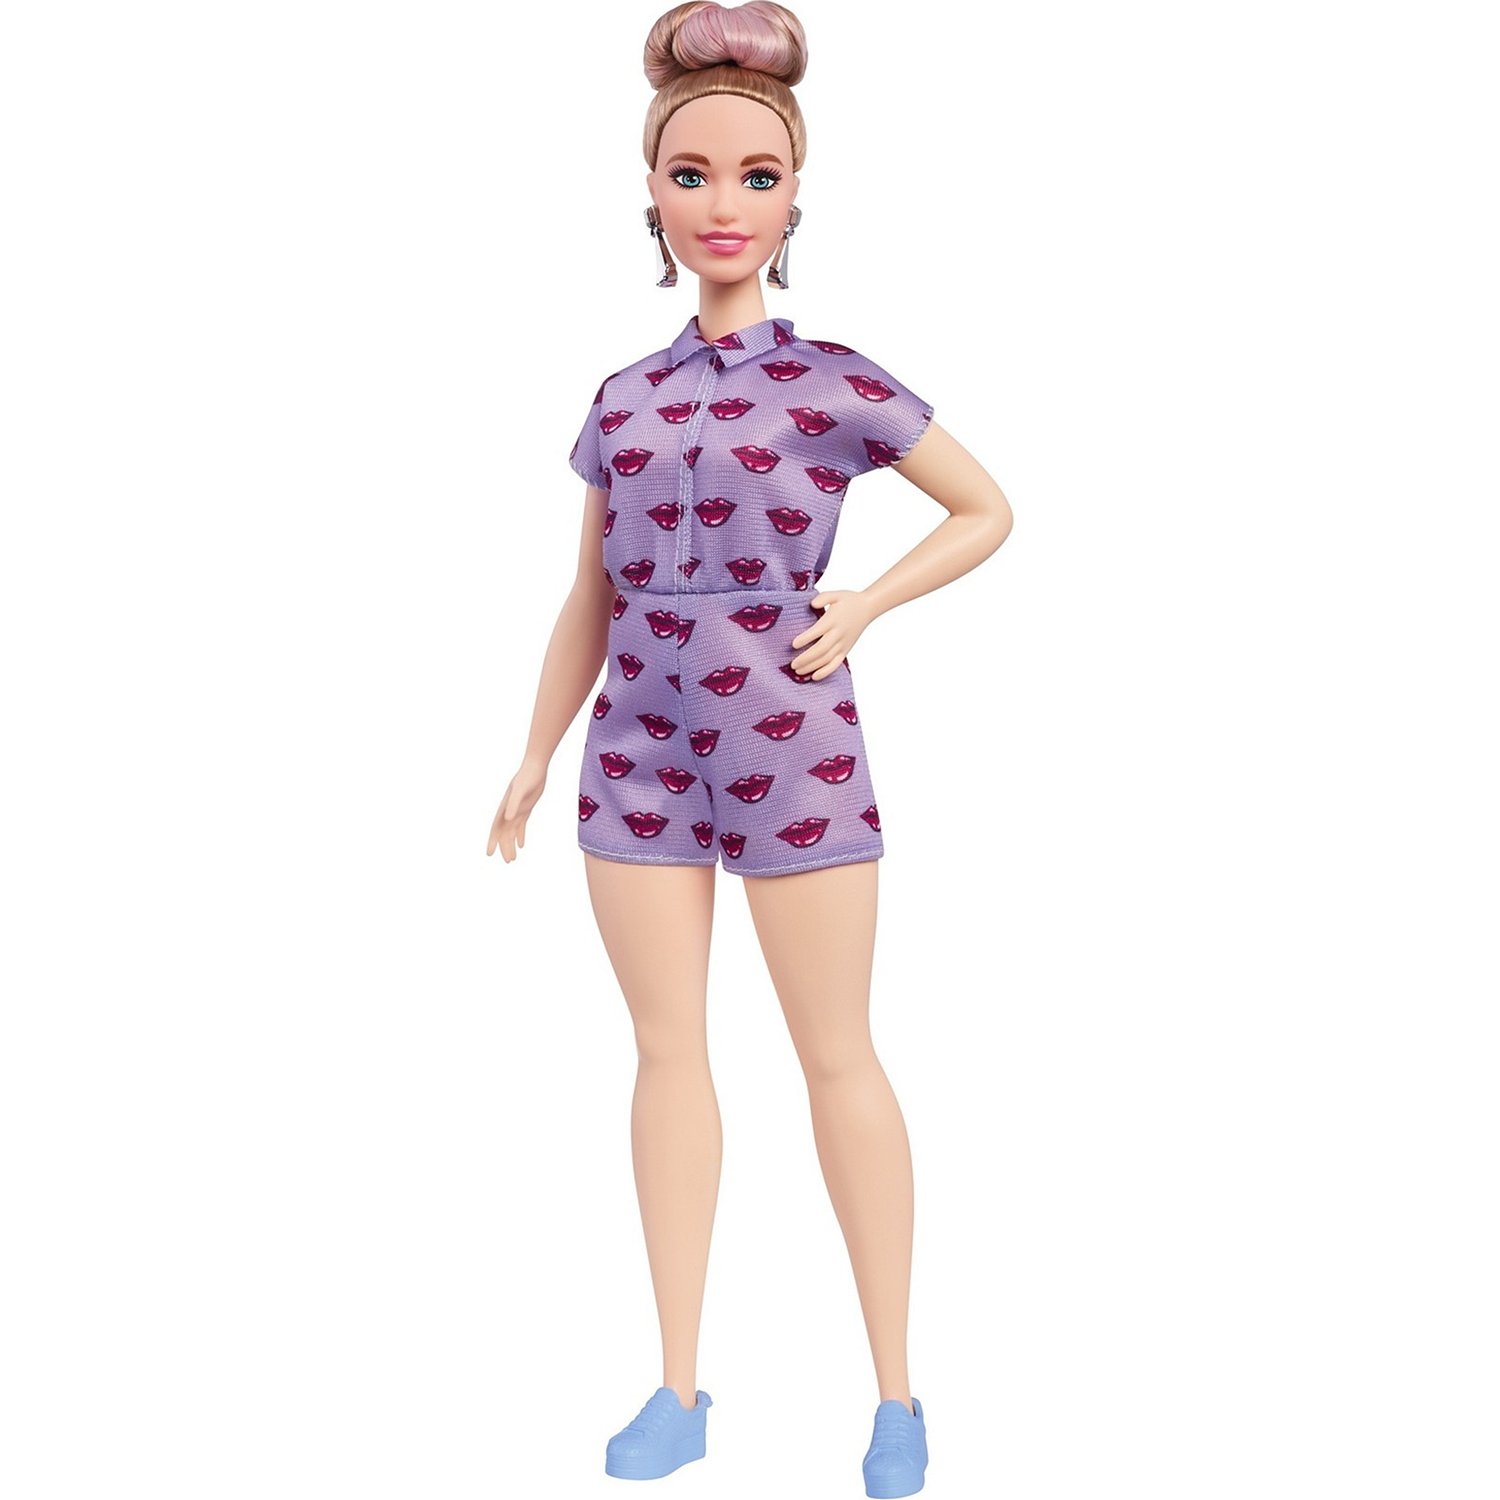 Кукла Barbie Игра с модой, 29 см, FJF40